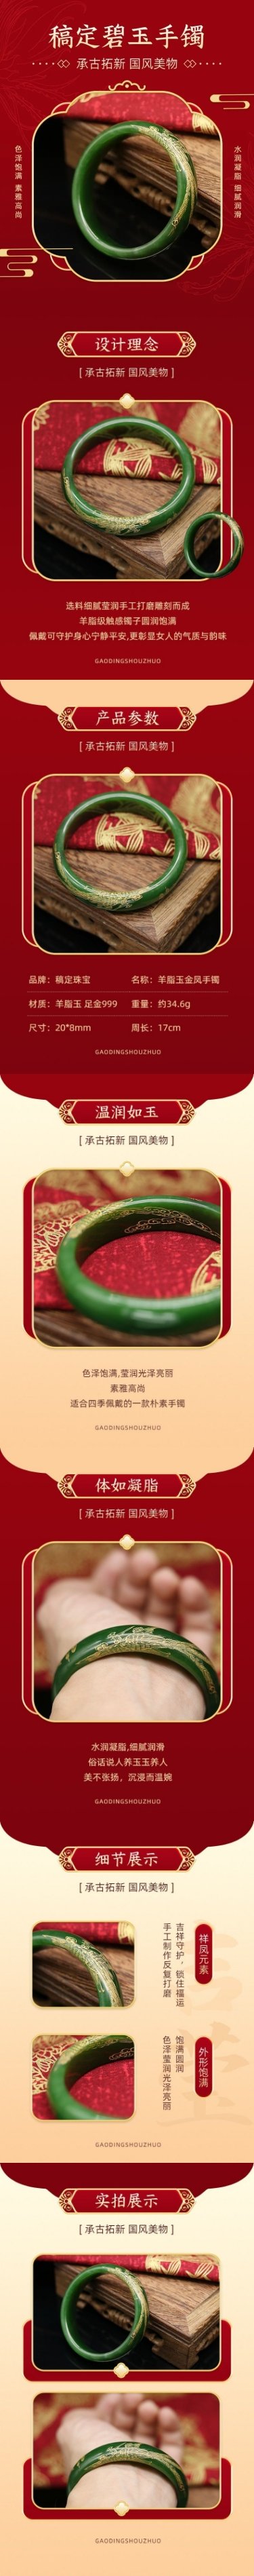 中国风喜庆年货节珠宝首饰手镯详情页预览效果